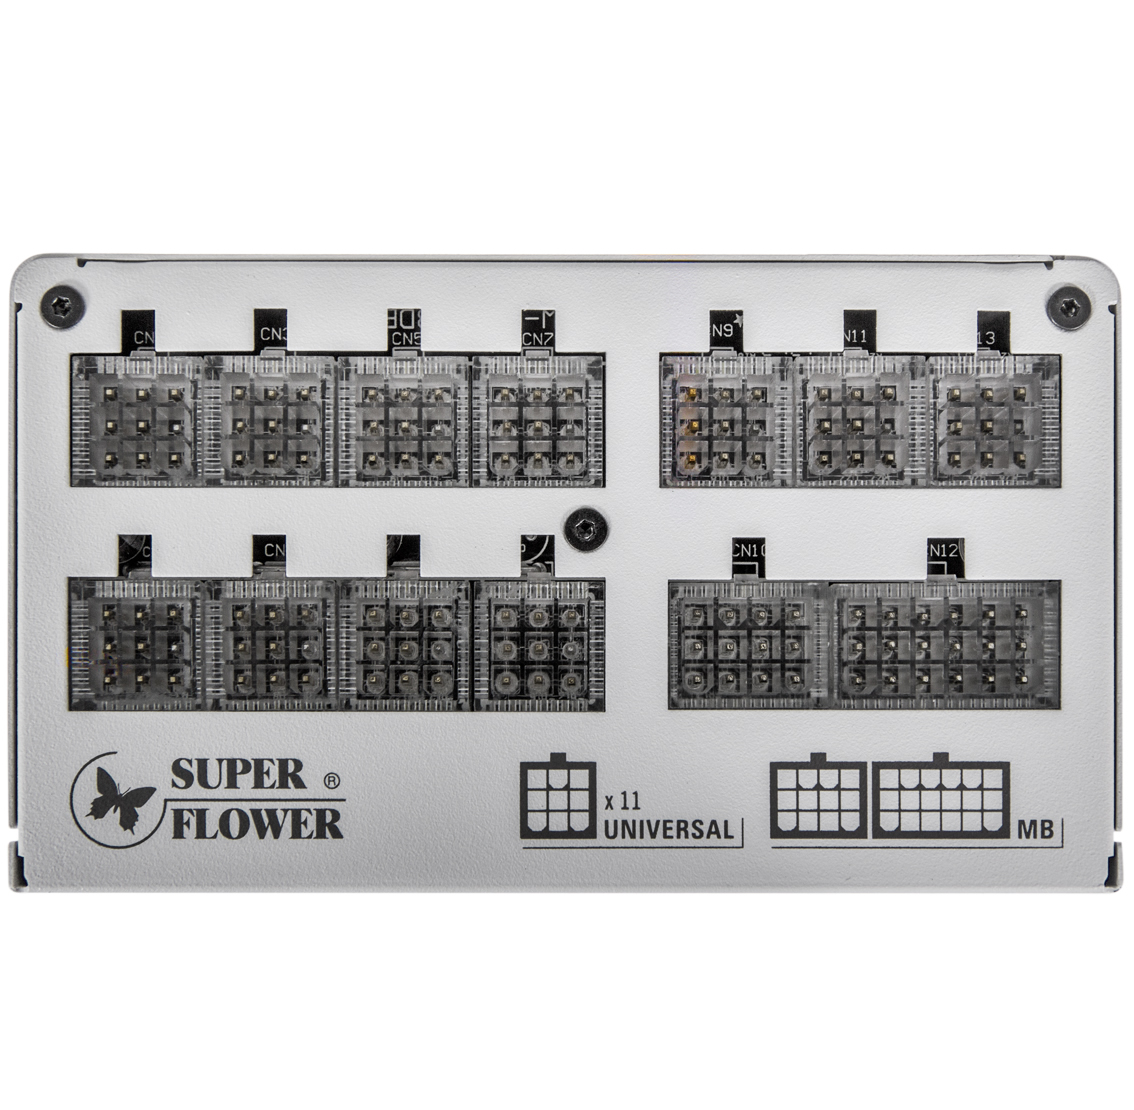 Super Flower - Super Flower Leadex Platinum 1200W Fully Modular 80 Plus Platinum Power Sup